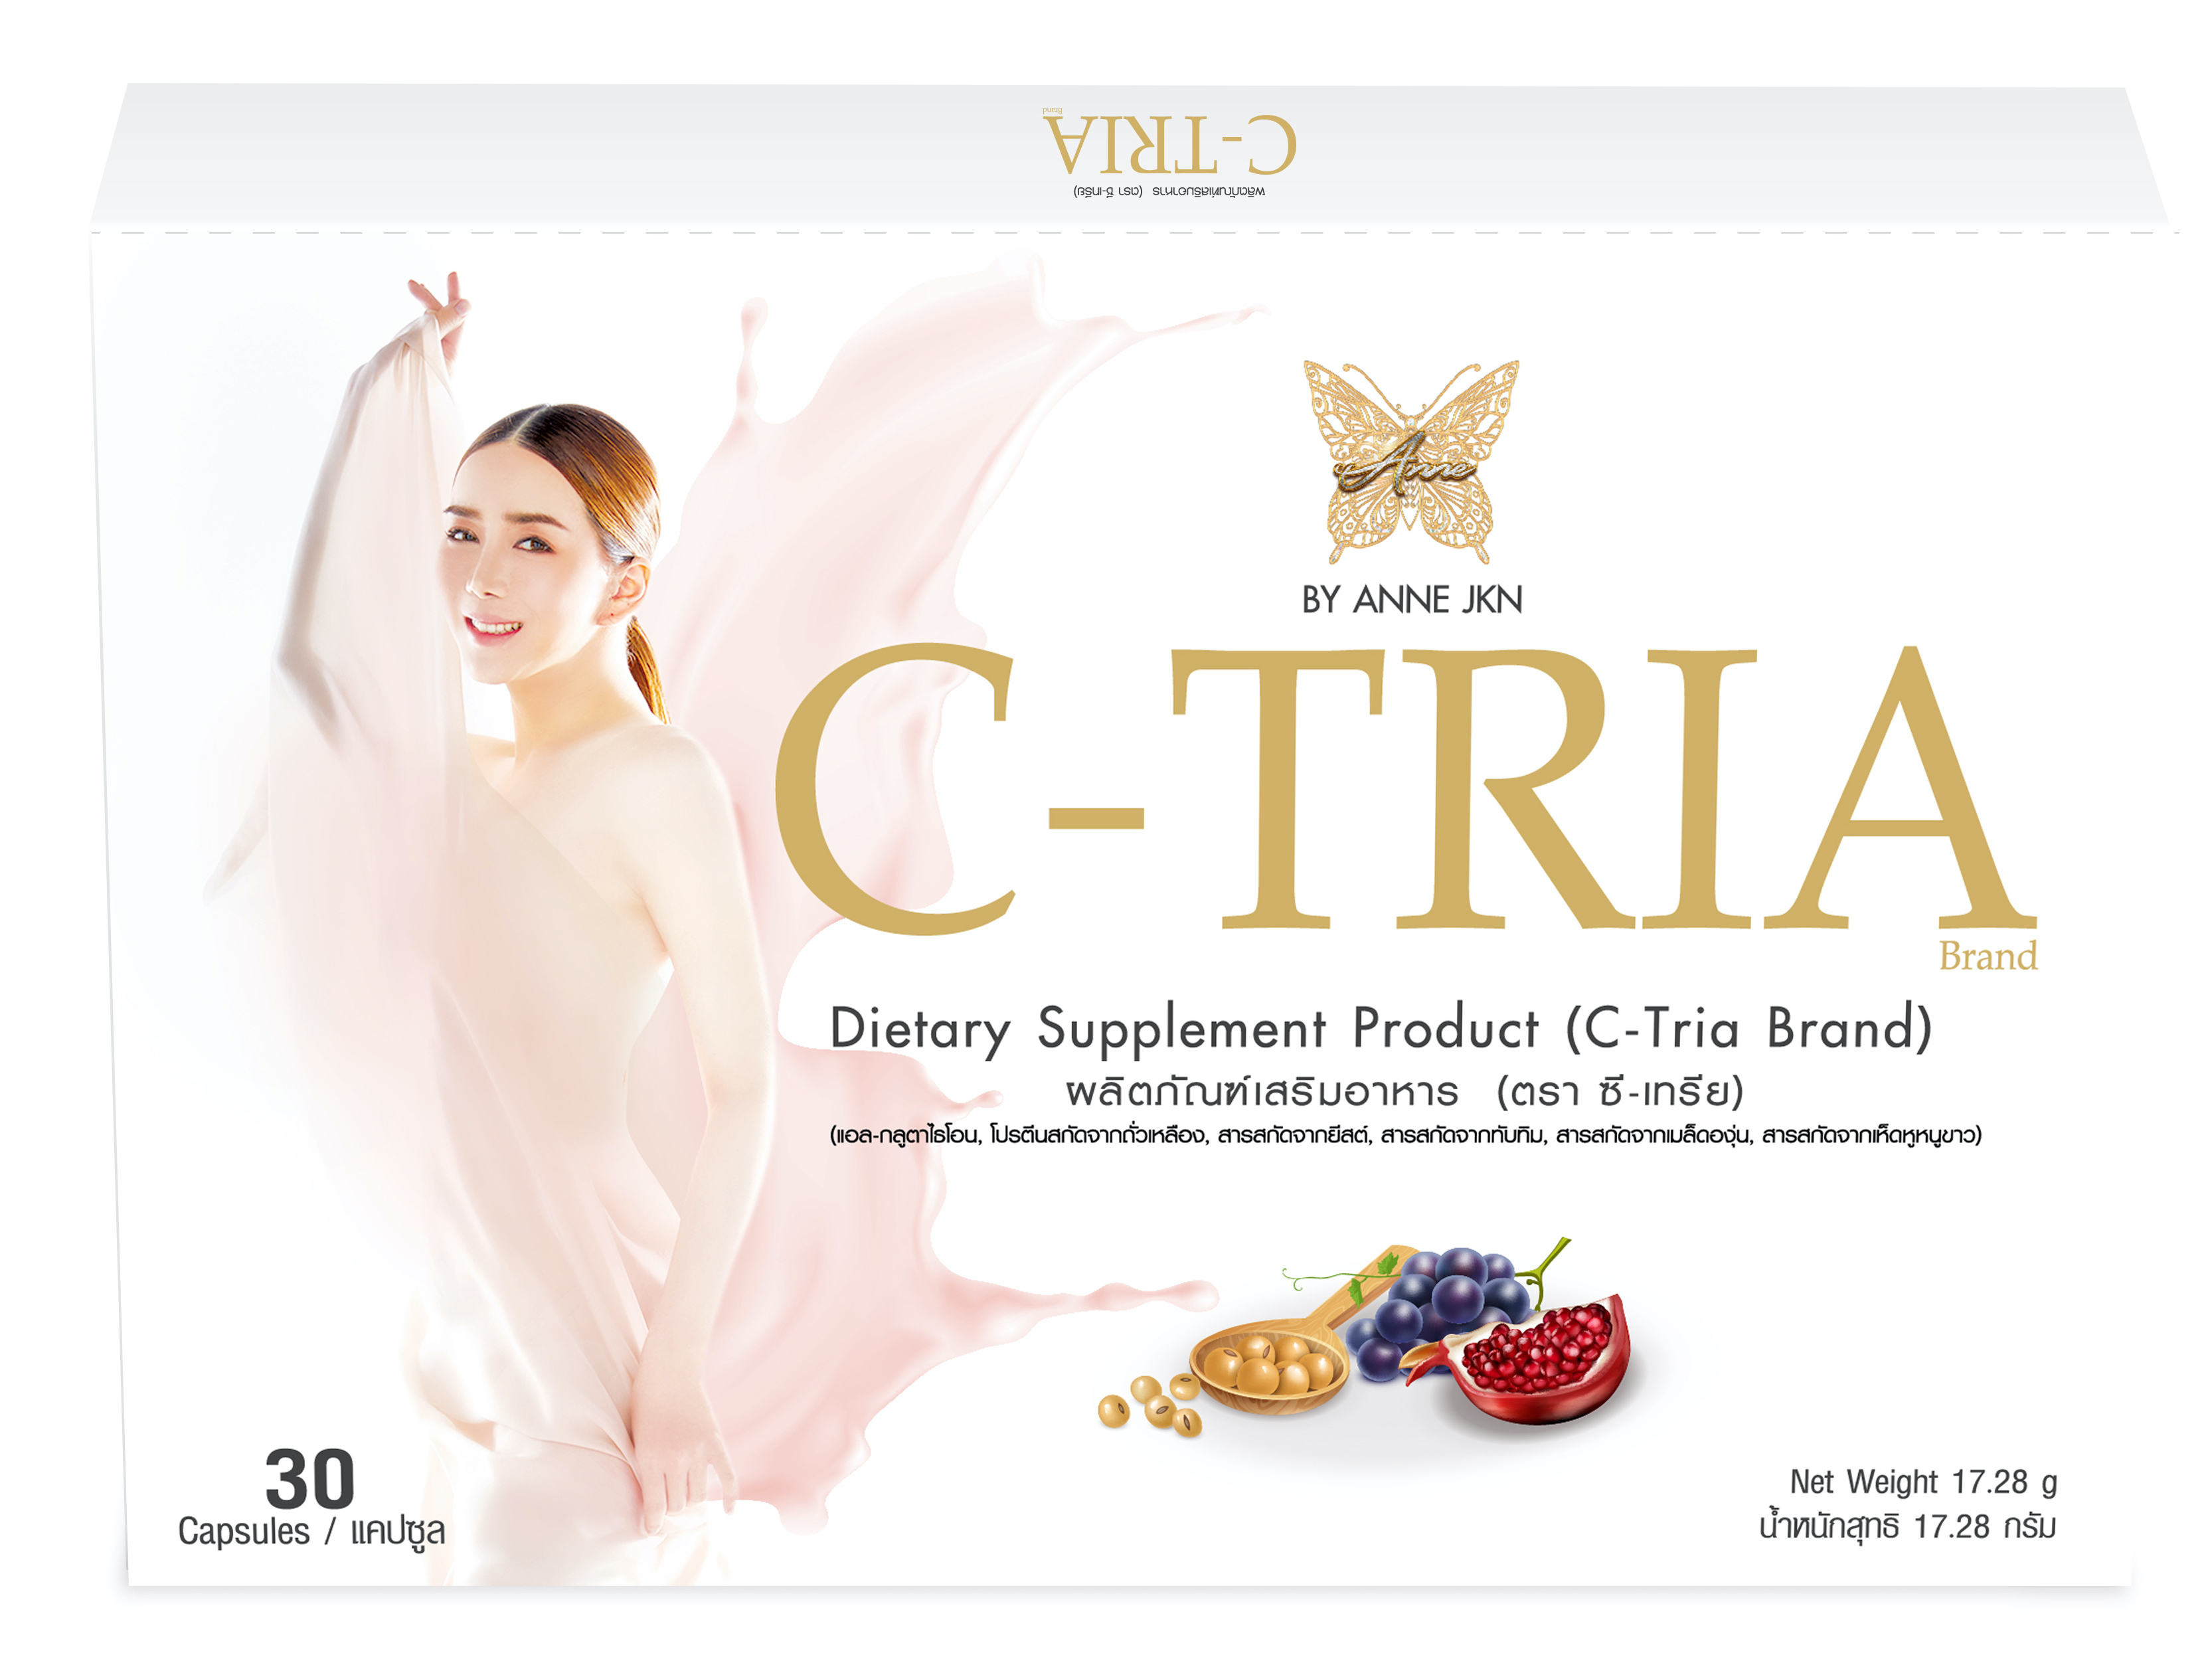 C-TRIA ผลิตภัณฑ์เสริมอาหารซีเทรีย ผิวขาว ผิวสวย โดย คุณแอน จักรพงษ์ JKN Shopping